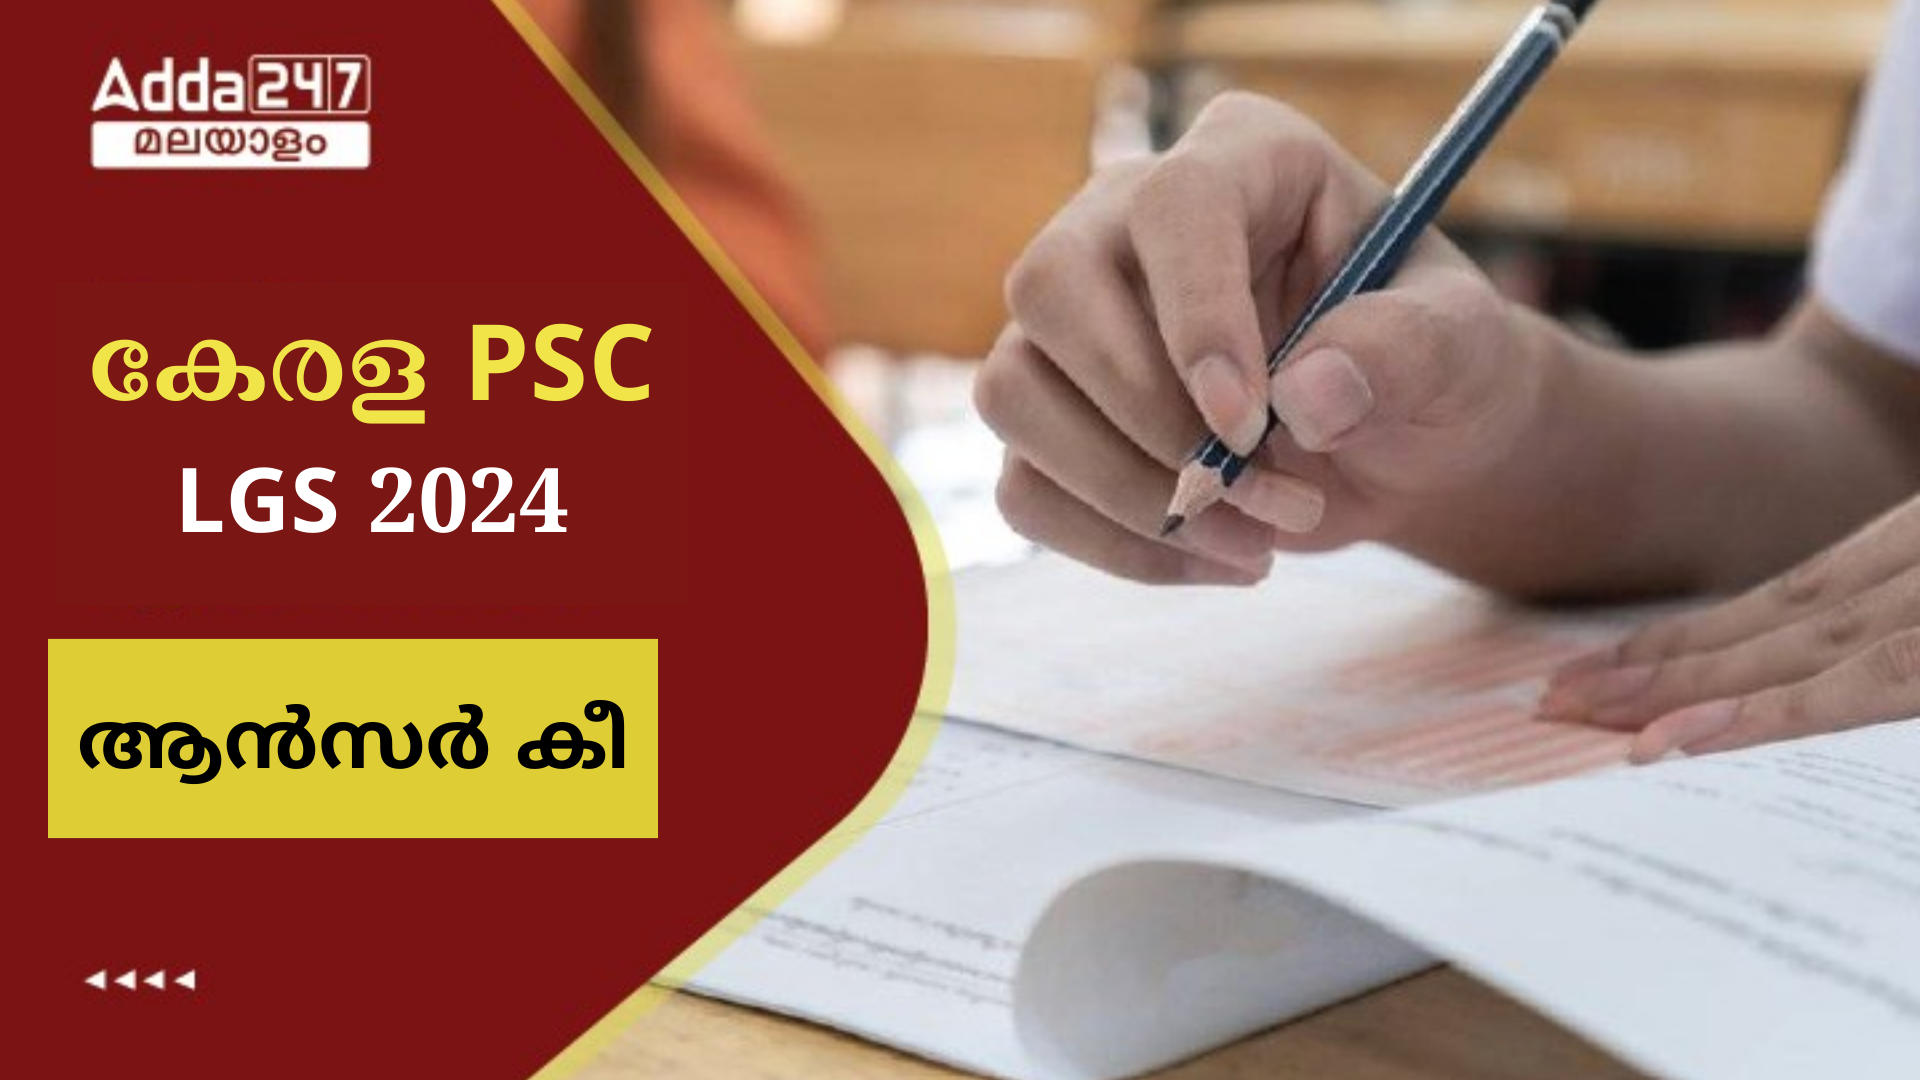 കേരള PSC LGS ആൻസർ കീ 2024 OUT, PDF ഡൗൺലോഡ്